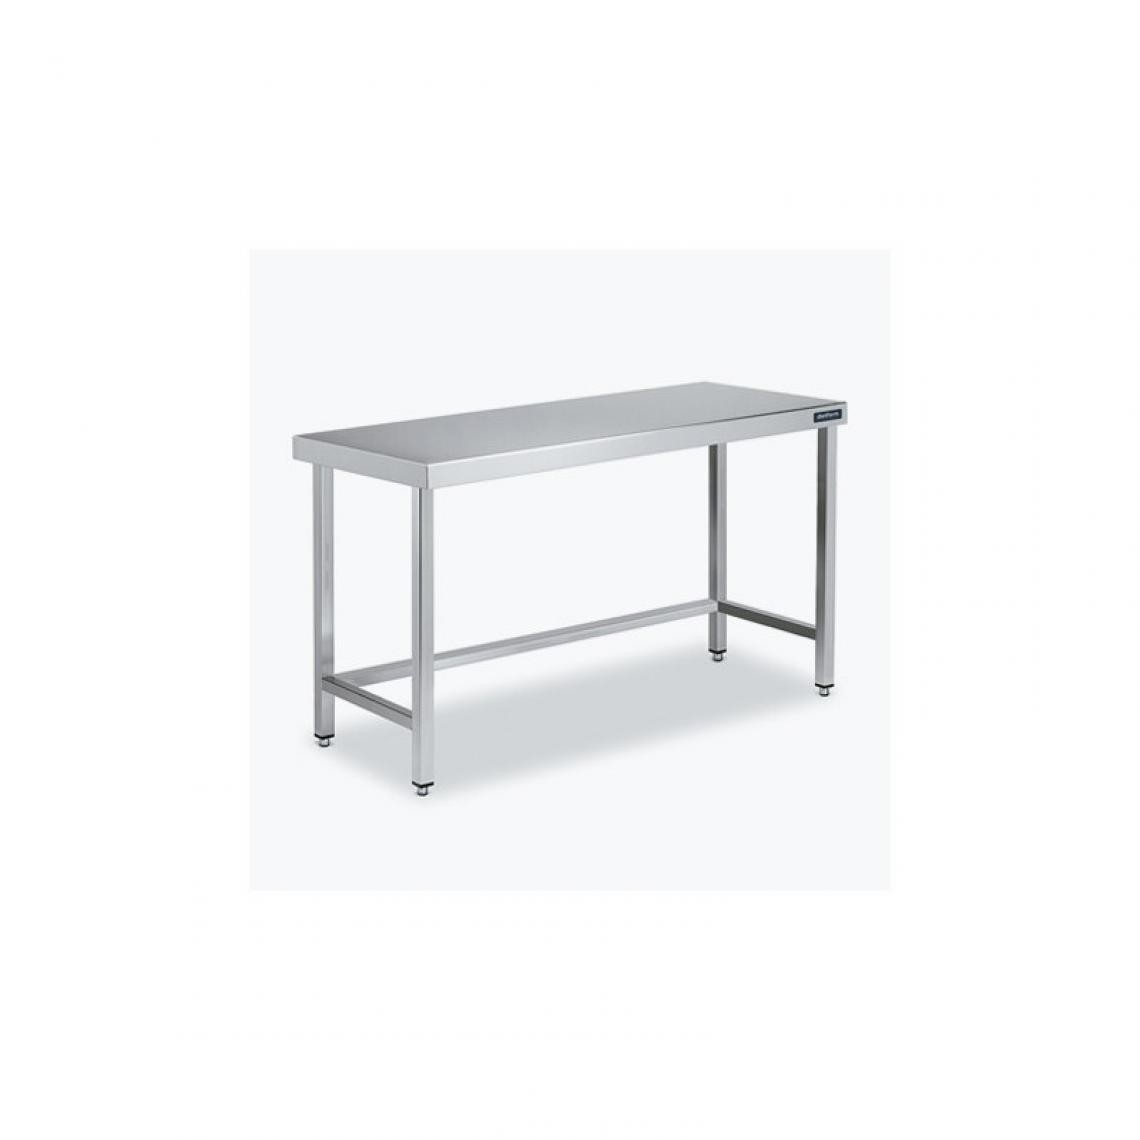 DISTFORM - Table Centrale 600x600X600 avec Renforts - Distform - Inox 18/10600x600x600mm - Tables à manger